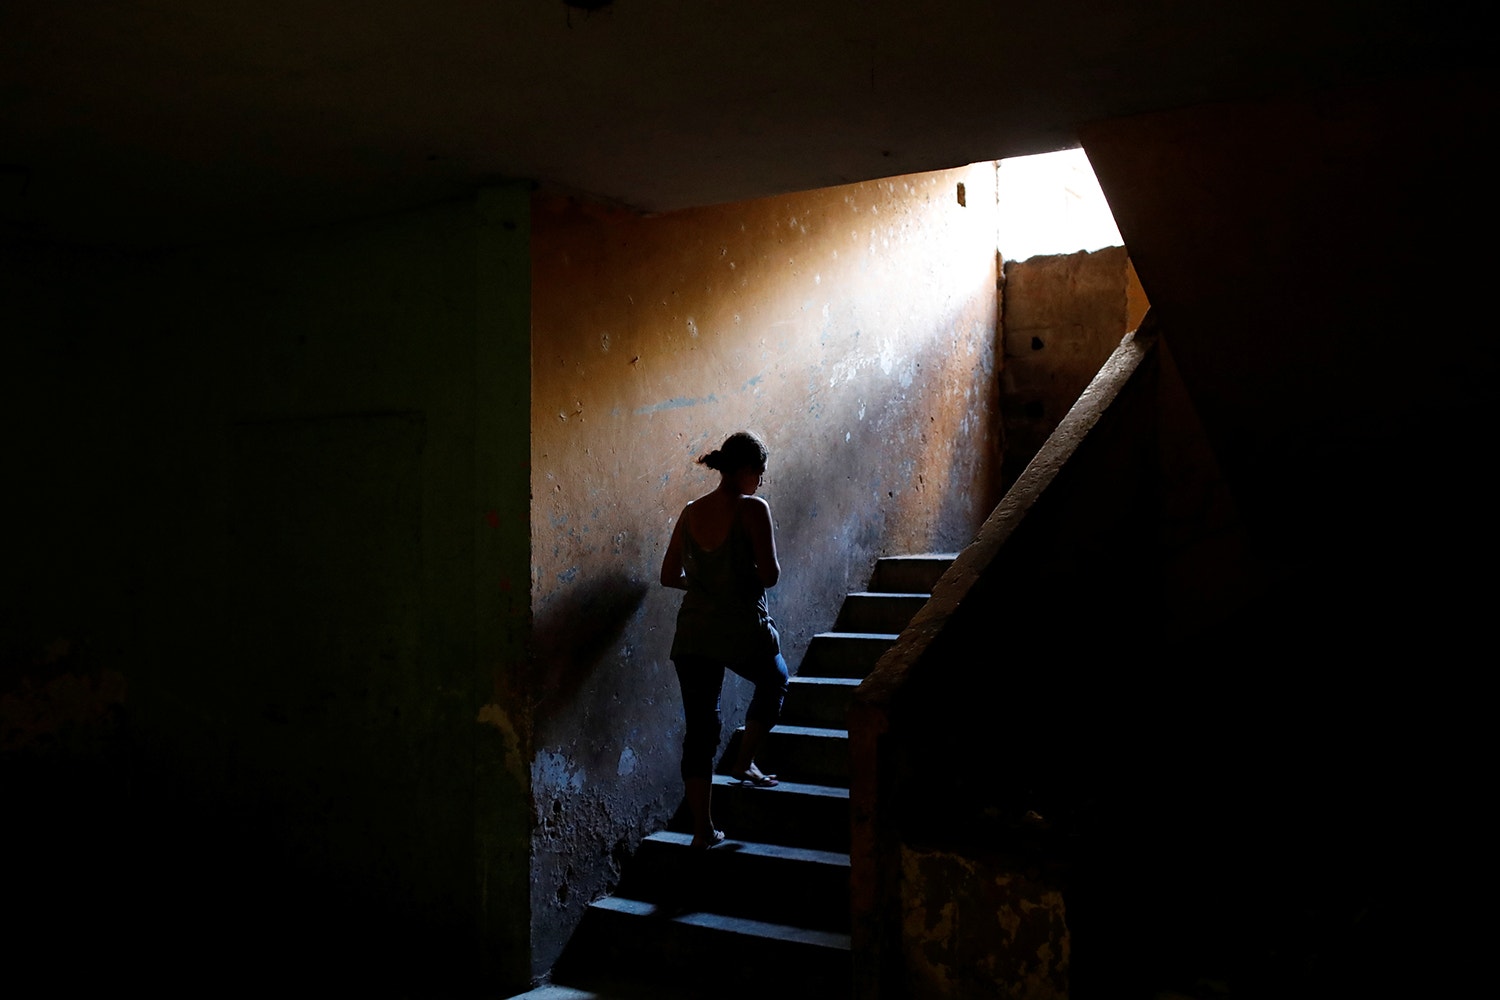  Elizabeth Altuve vive num pr&eacute;dio abandonado /Foto: Marco Bello - Reuters 